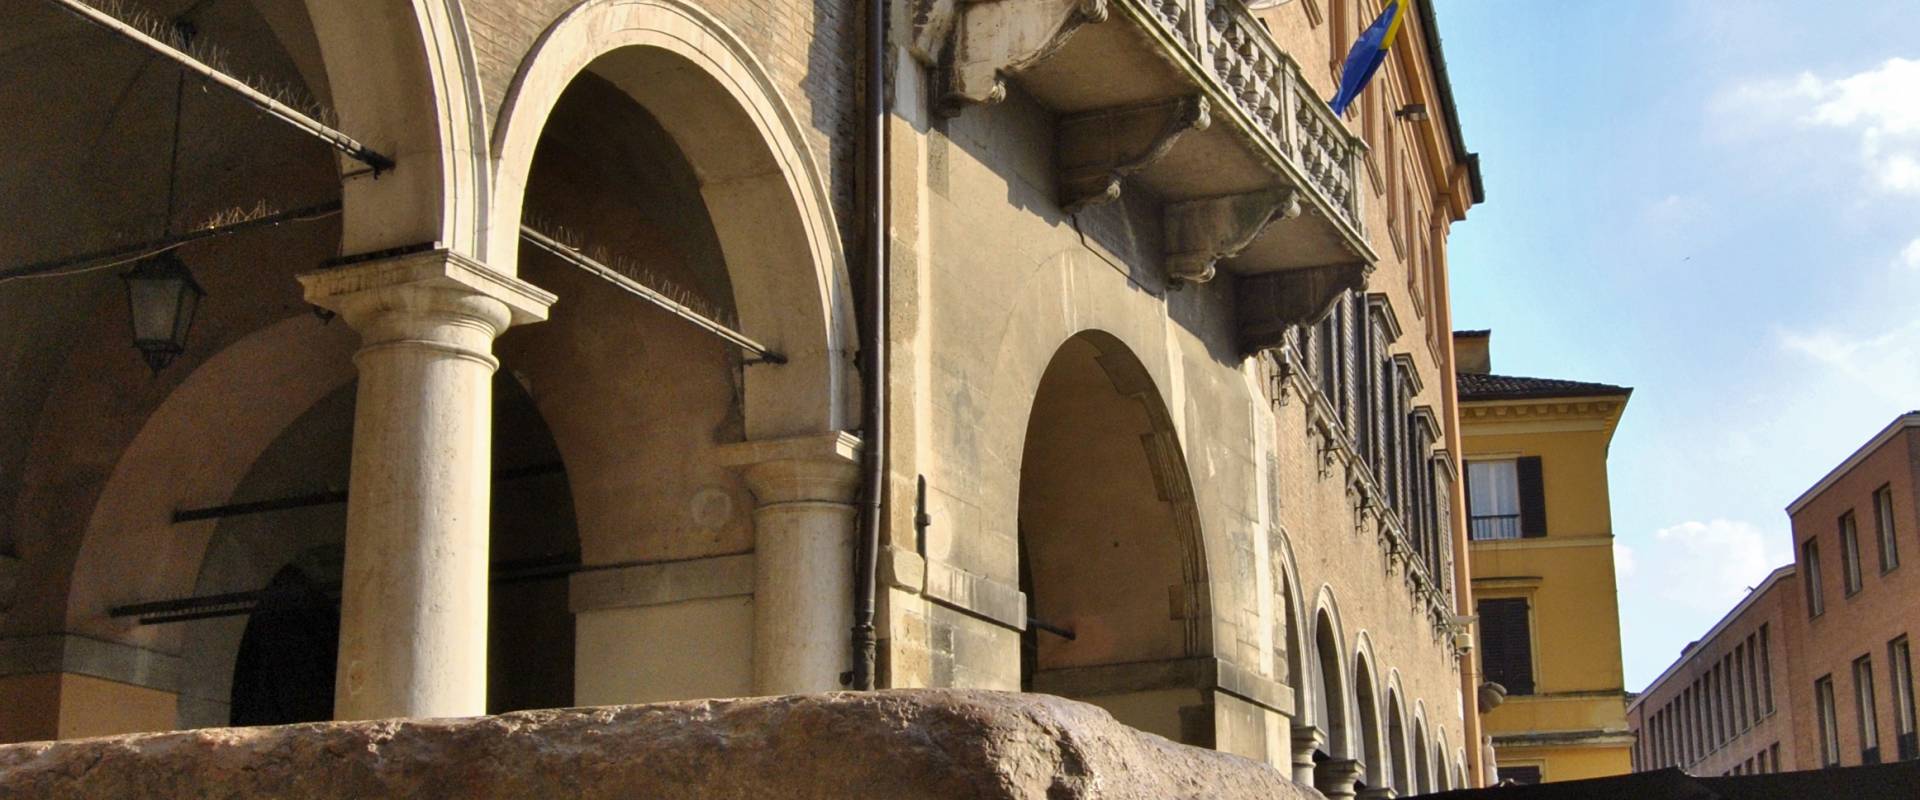 Il Palazzo Comunale e la Pedra Ringadora photo by Giorgia Violini